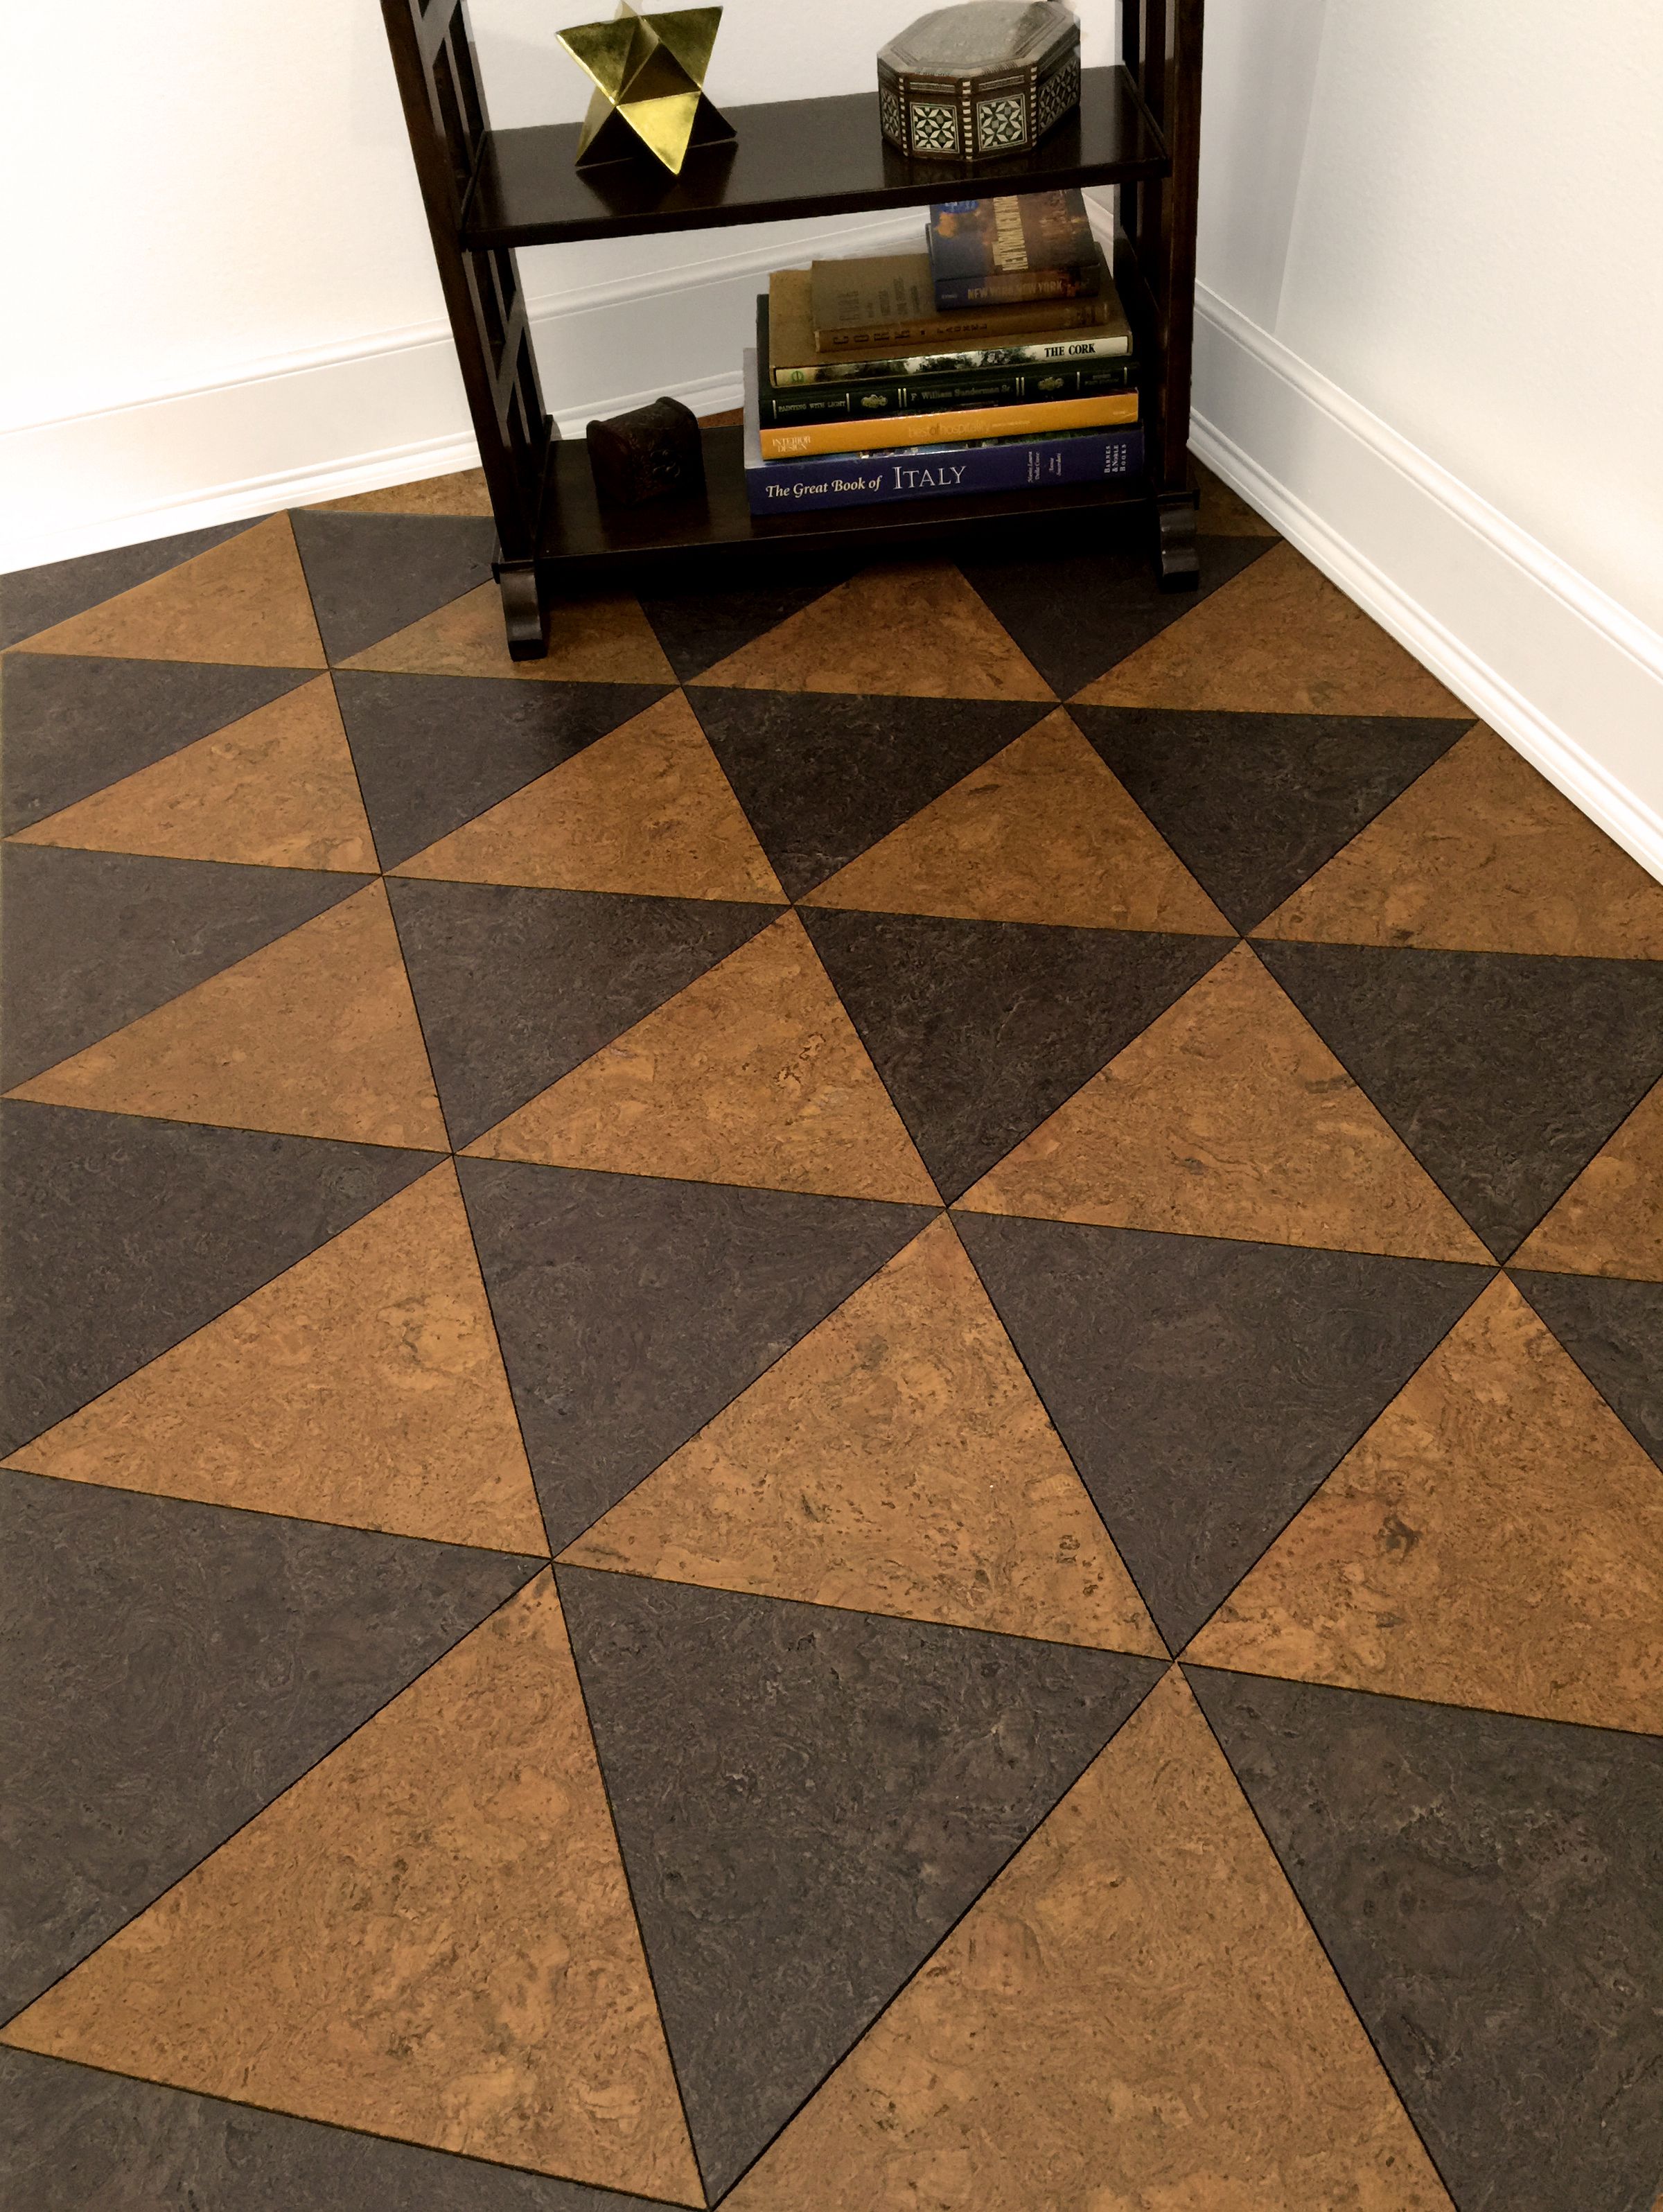 cork floor tiles #cork #tiles for #flooring. yes, this is a cork floor from corkfloor.com THGFDMG